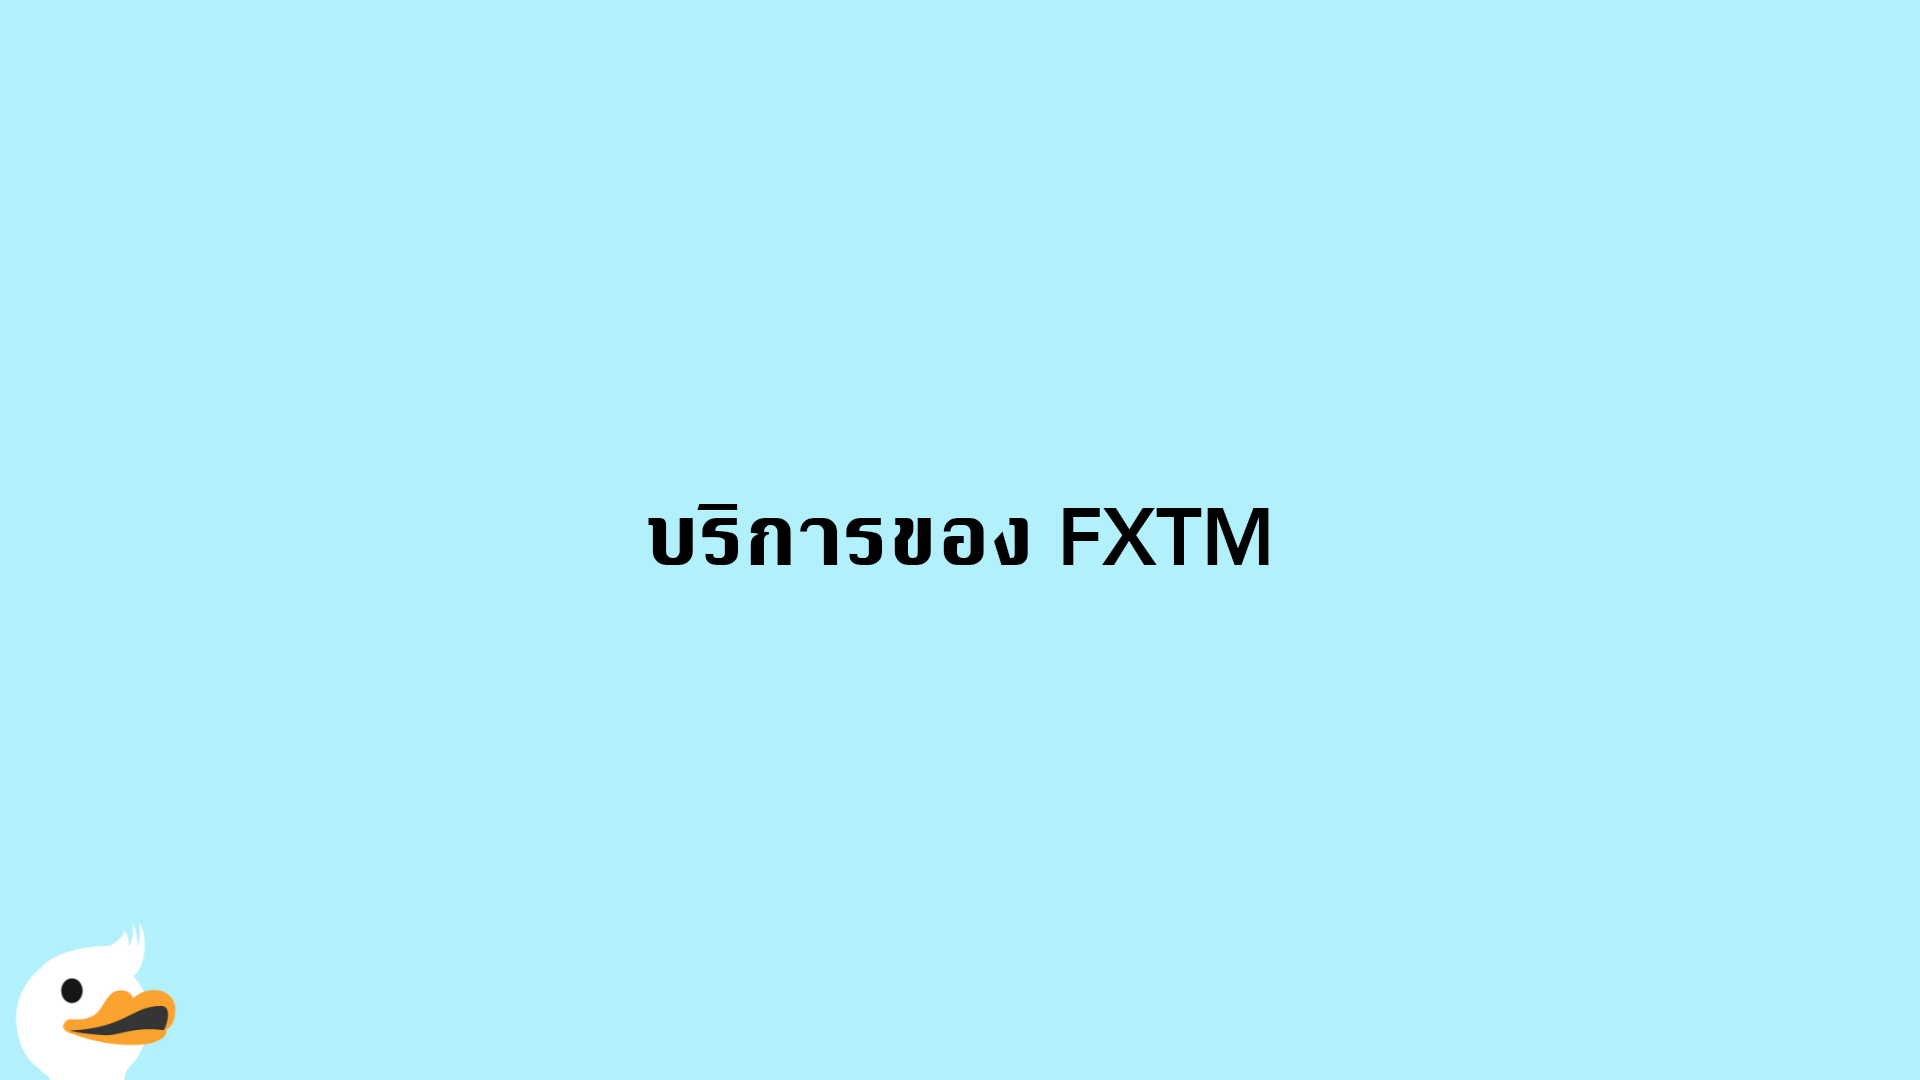 บริการของ FXTM